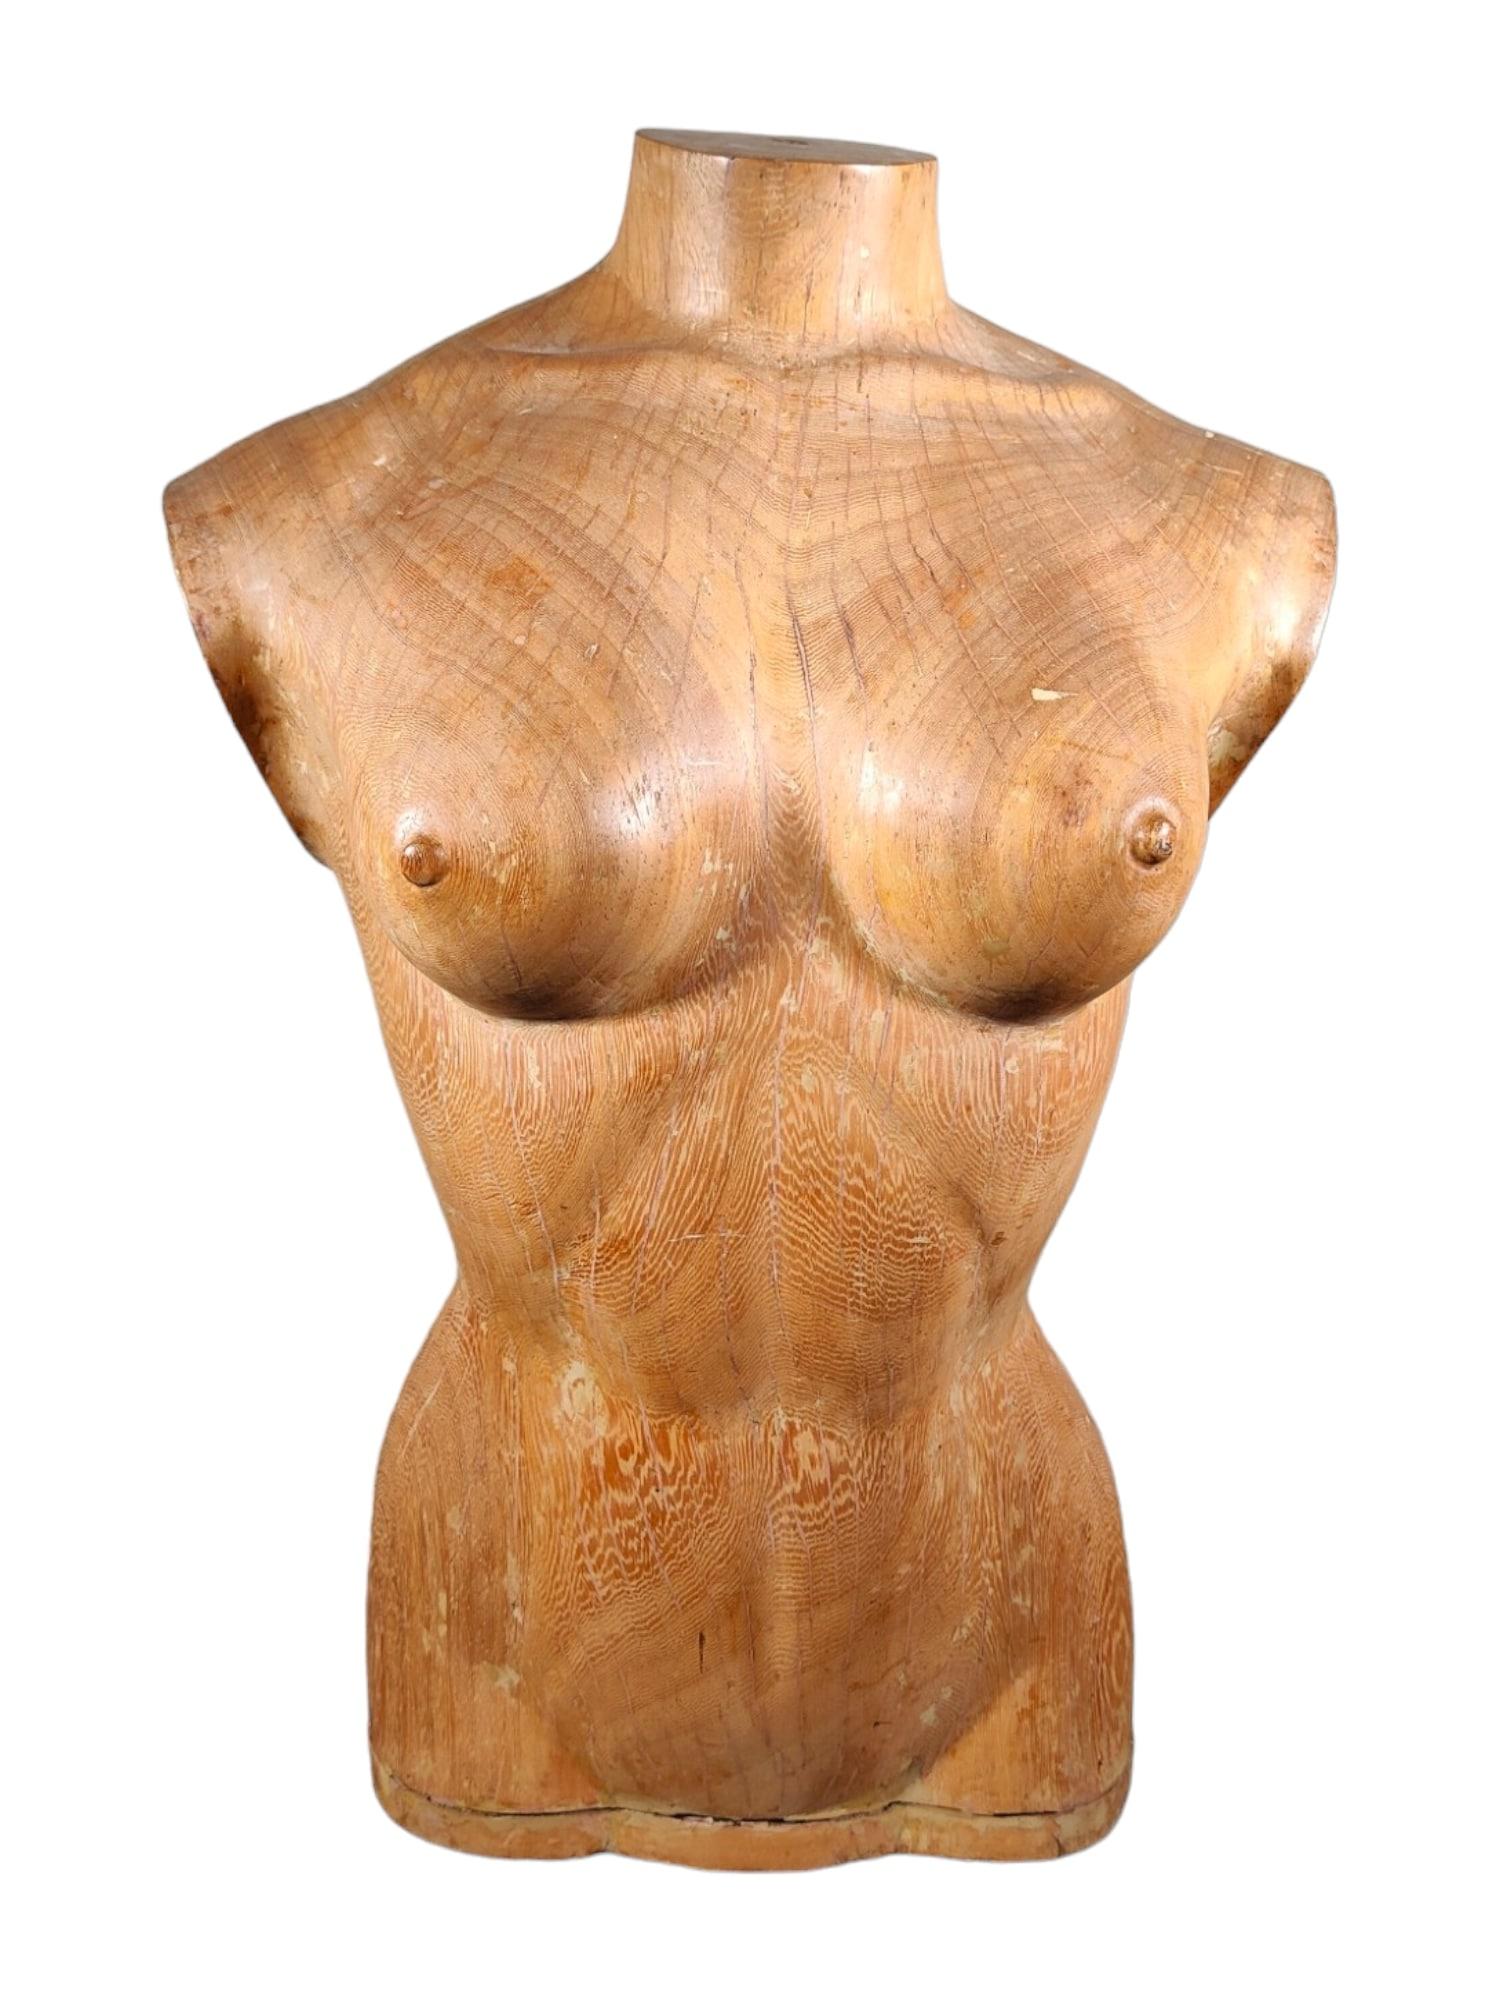 Plongez dans l'élégance intemporelle de l'art français des années 1950 avec cet élégant torse de femme en bois. Sculptée dans du bois massif, cette pièce témoigne du savoir-faire artisanal et du charme décoratif de l'époque.

Caractéristiques